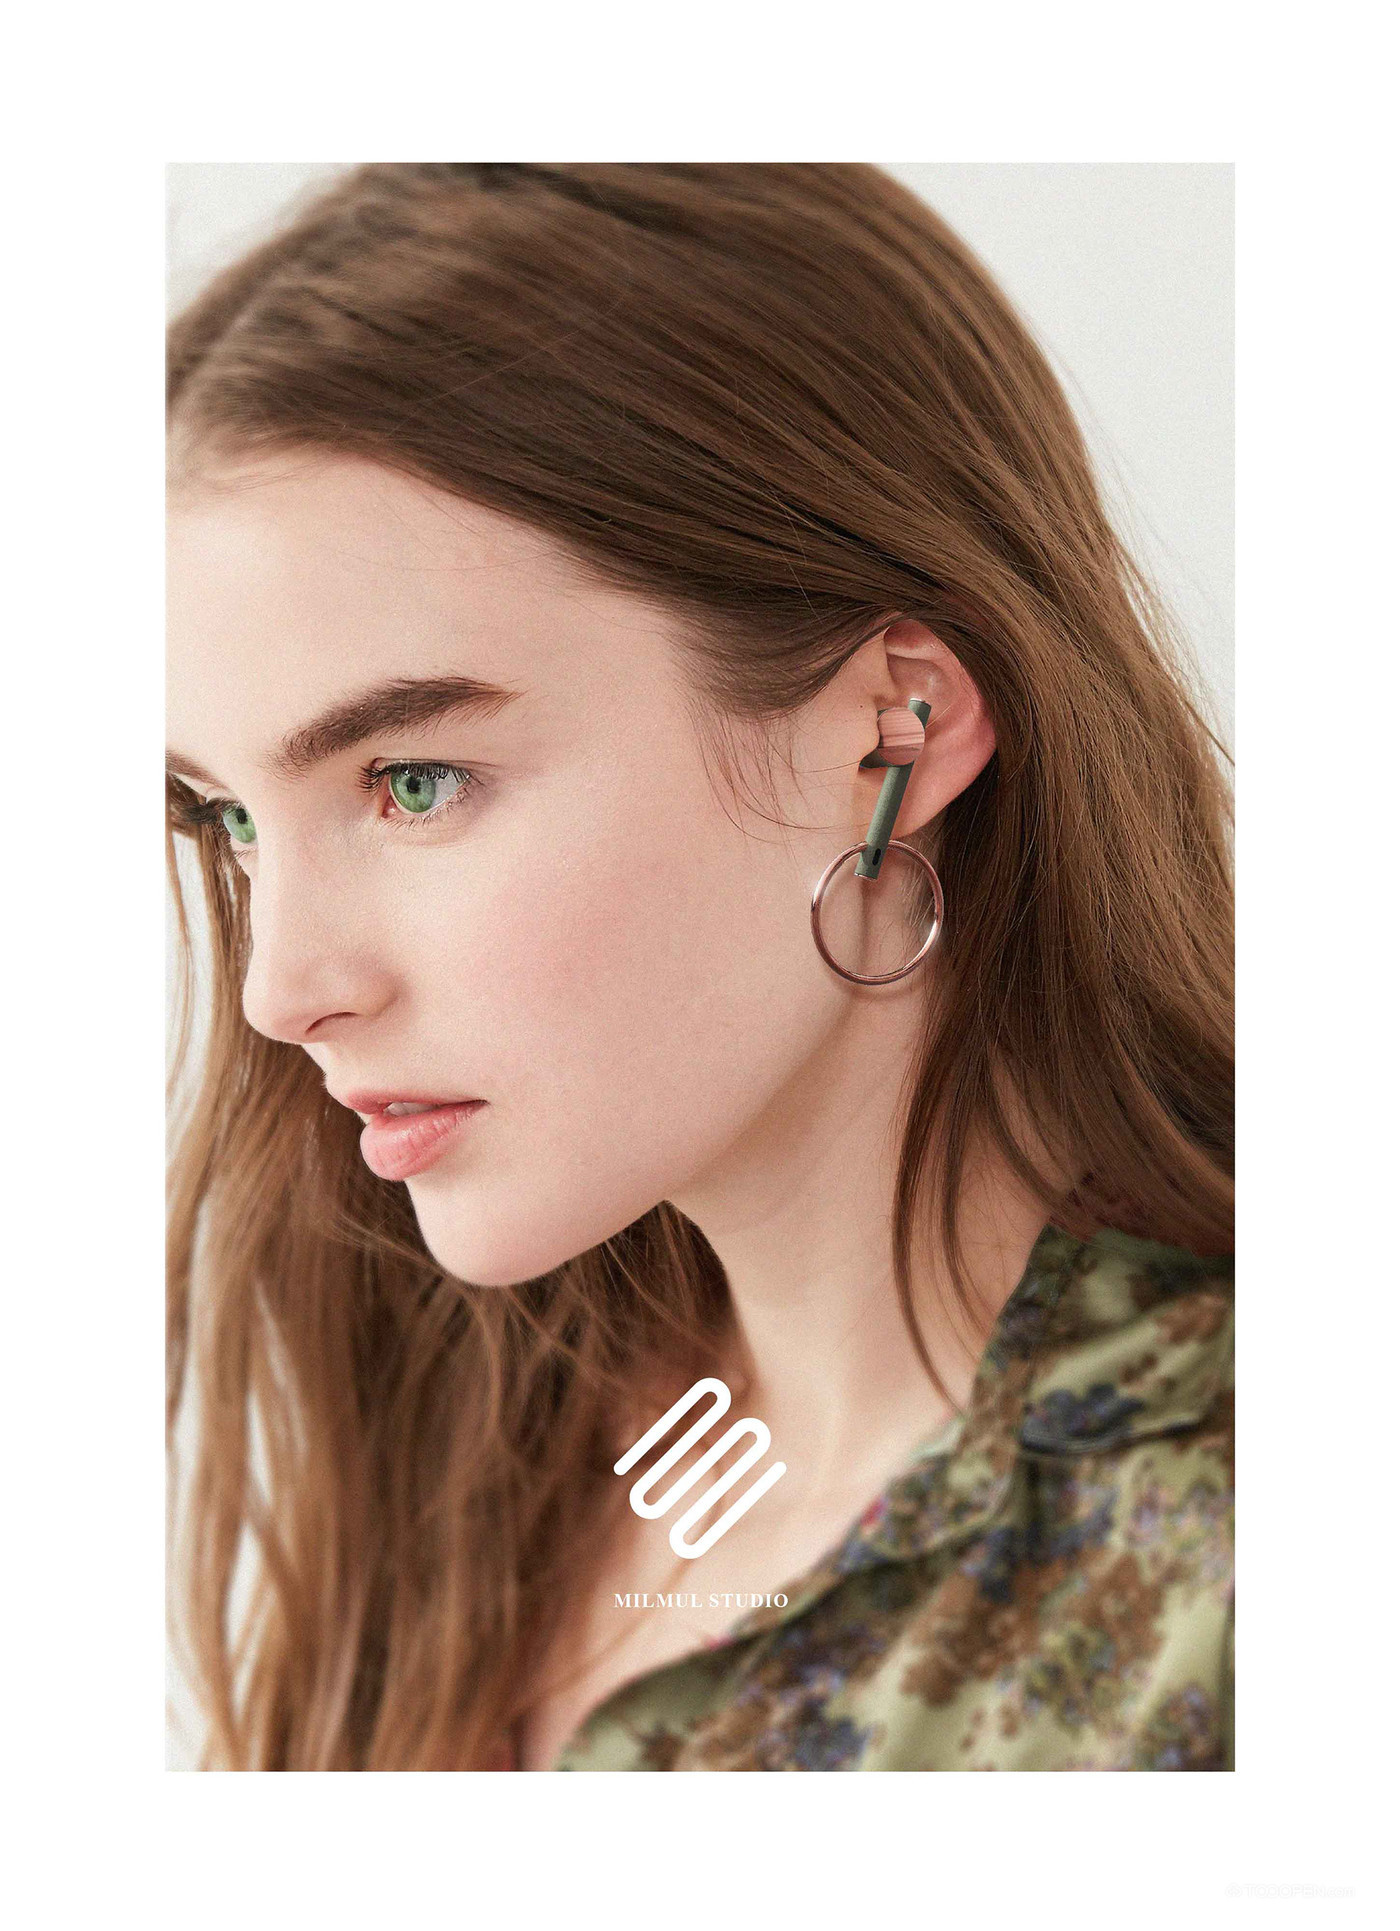 形似耳环的精致耳机产品设计高清图片-09